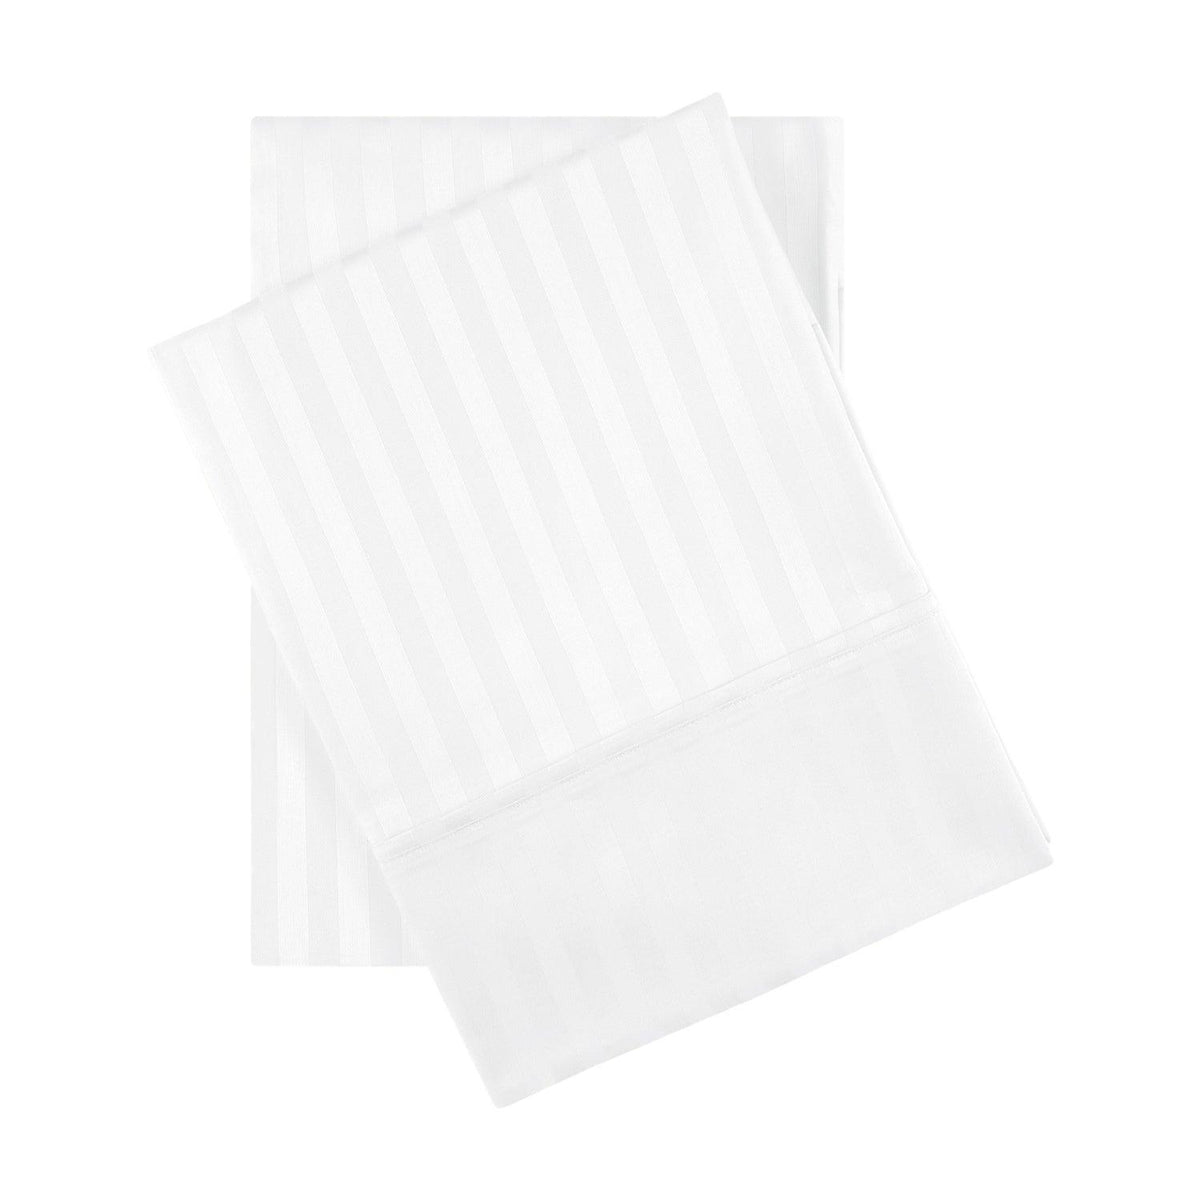 Premium 600 Thread Count Egyptian Cotton Striped Pillowcase Set - White